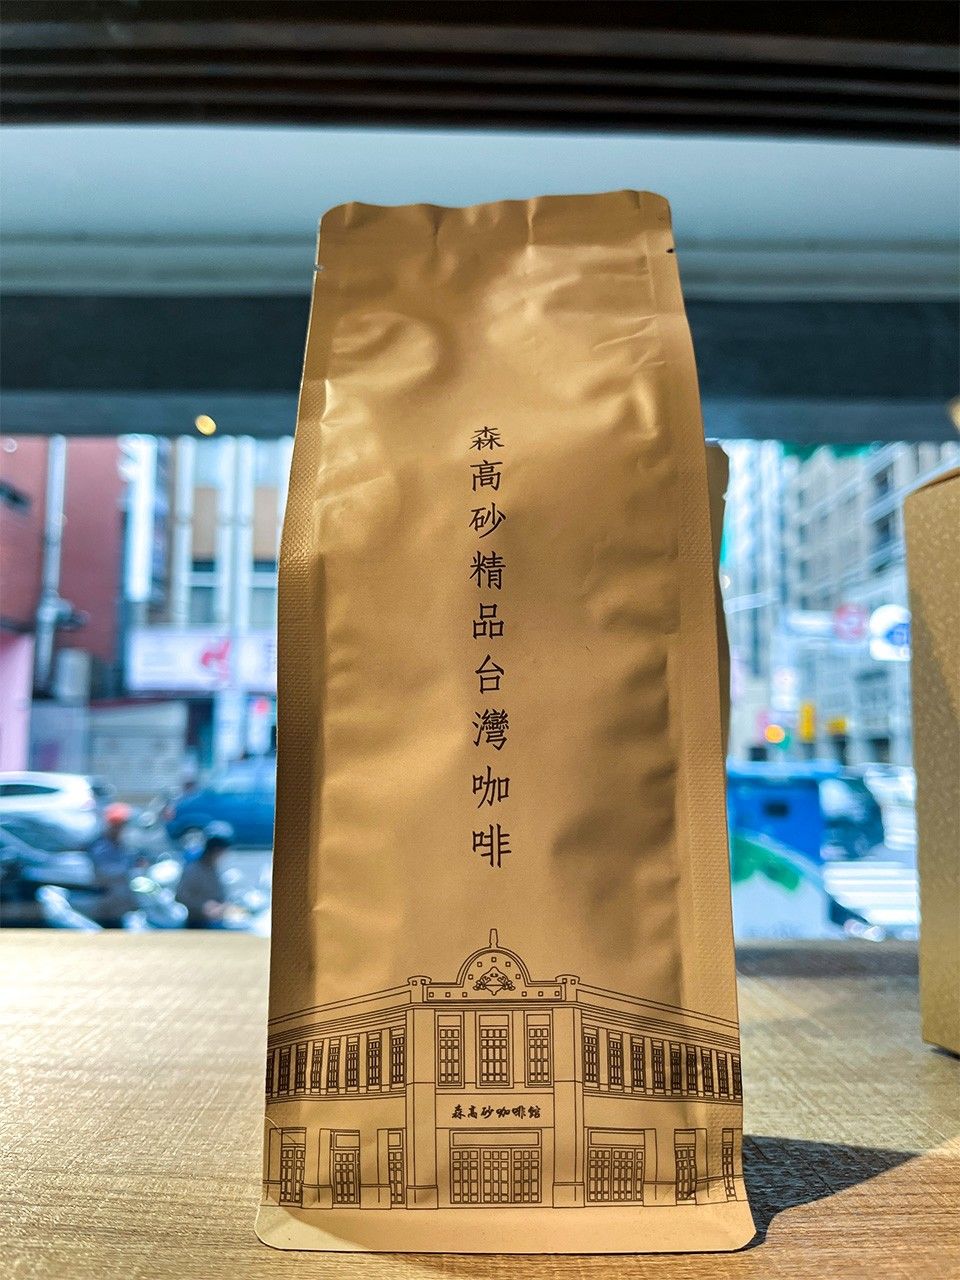 「森高砂咖啡館」使用臺灣產的咖啡豆。